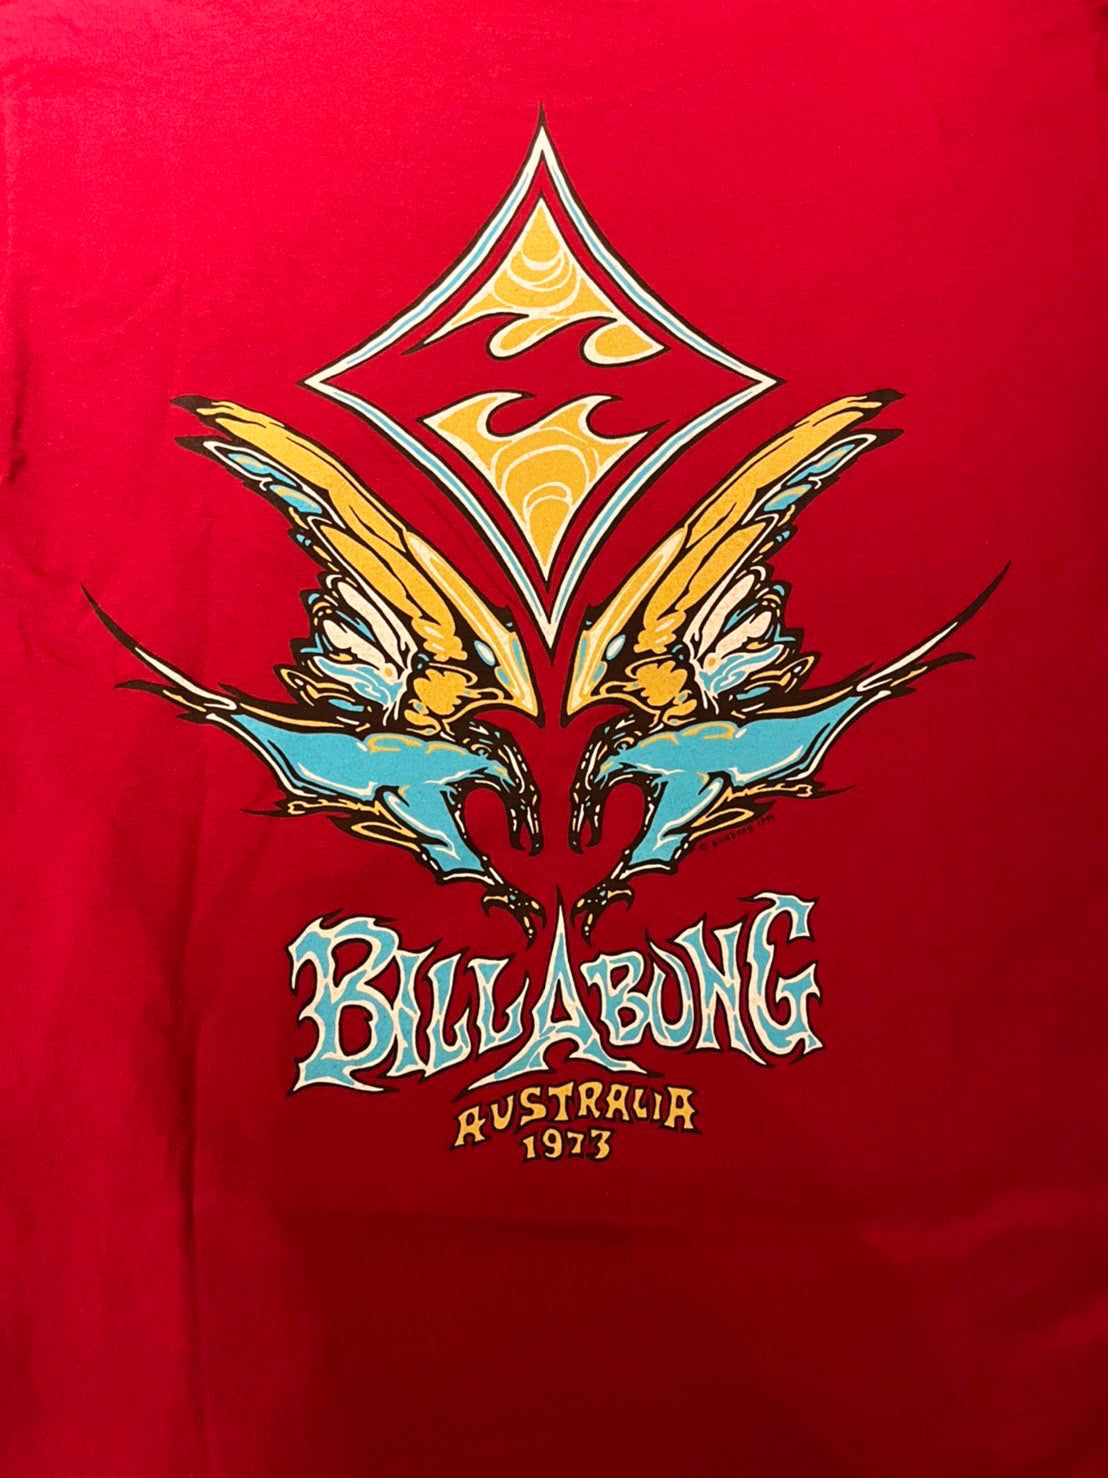 【Billabong】90's Billabong surf skate T-Shirt  made in USA（men's M)